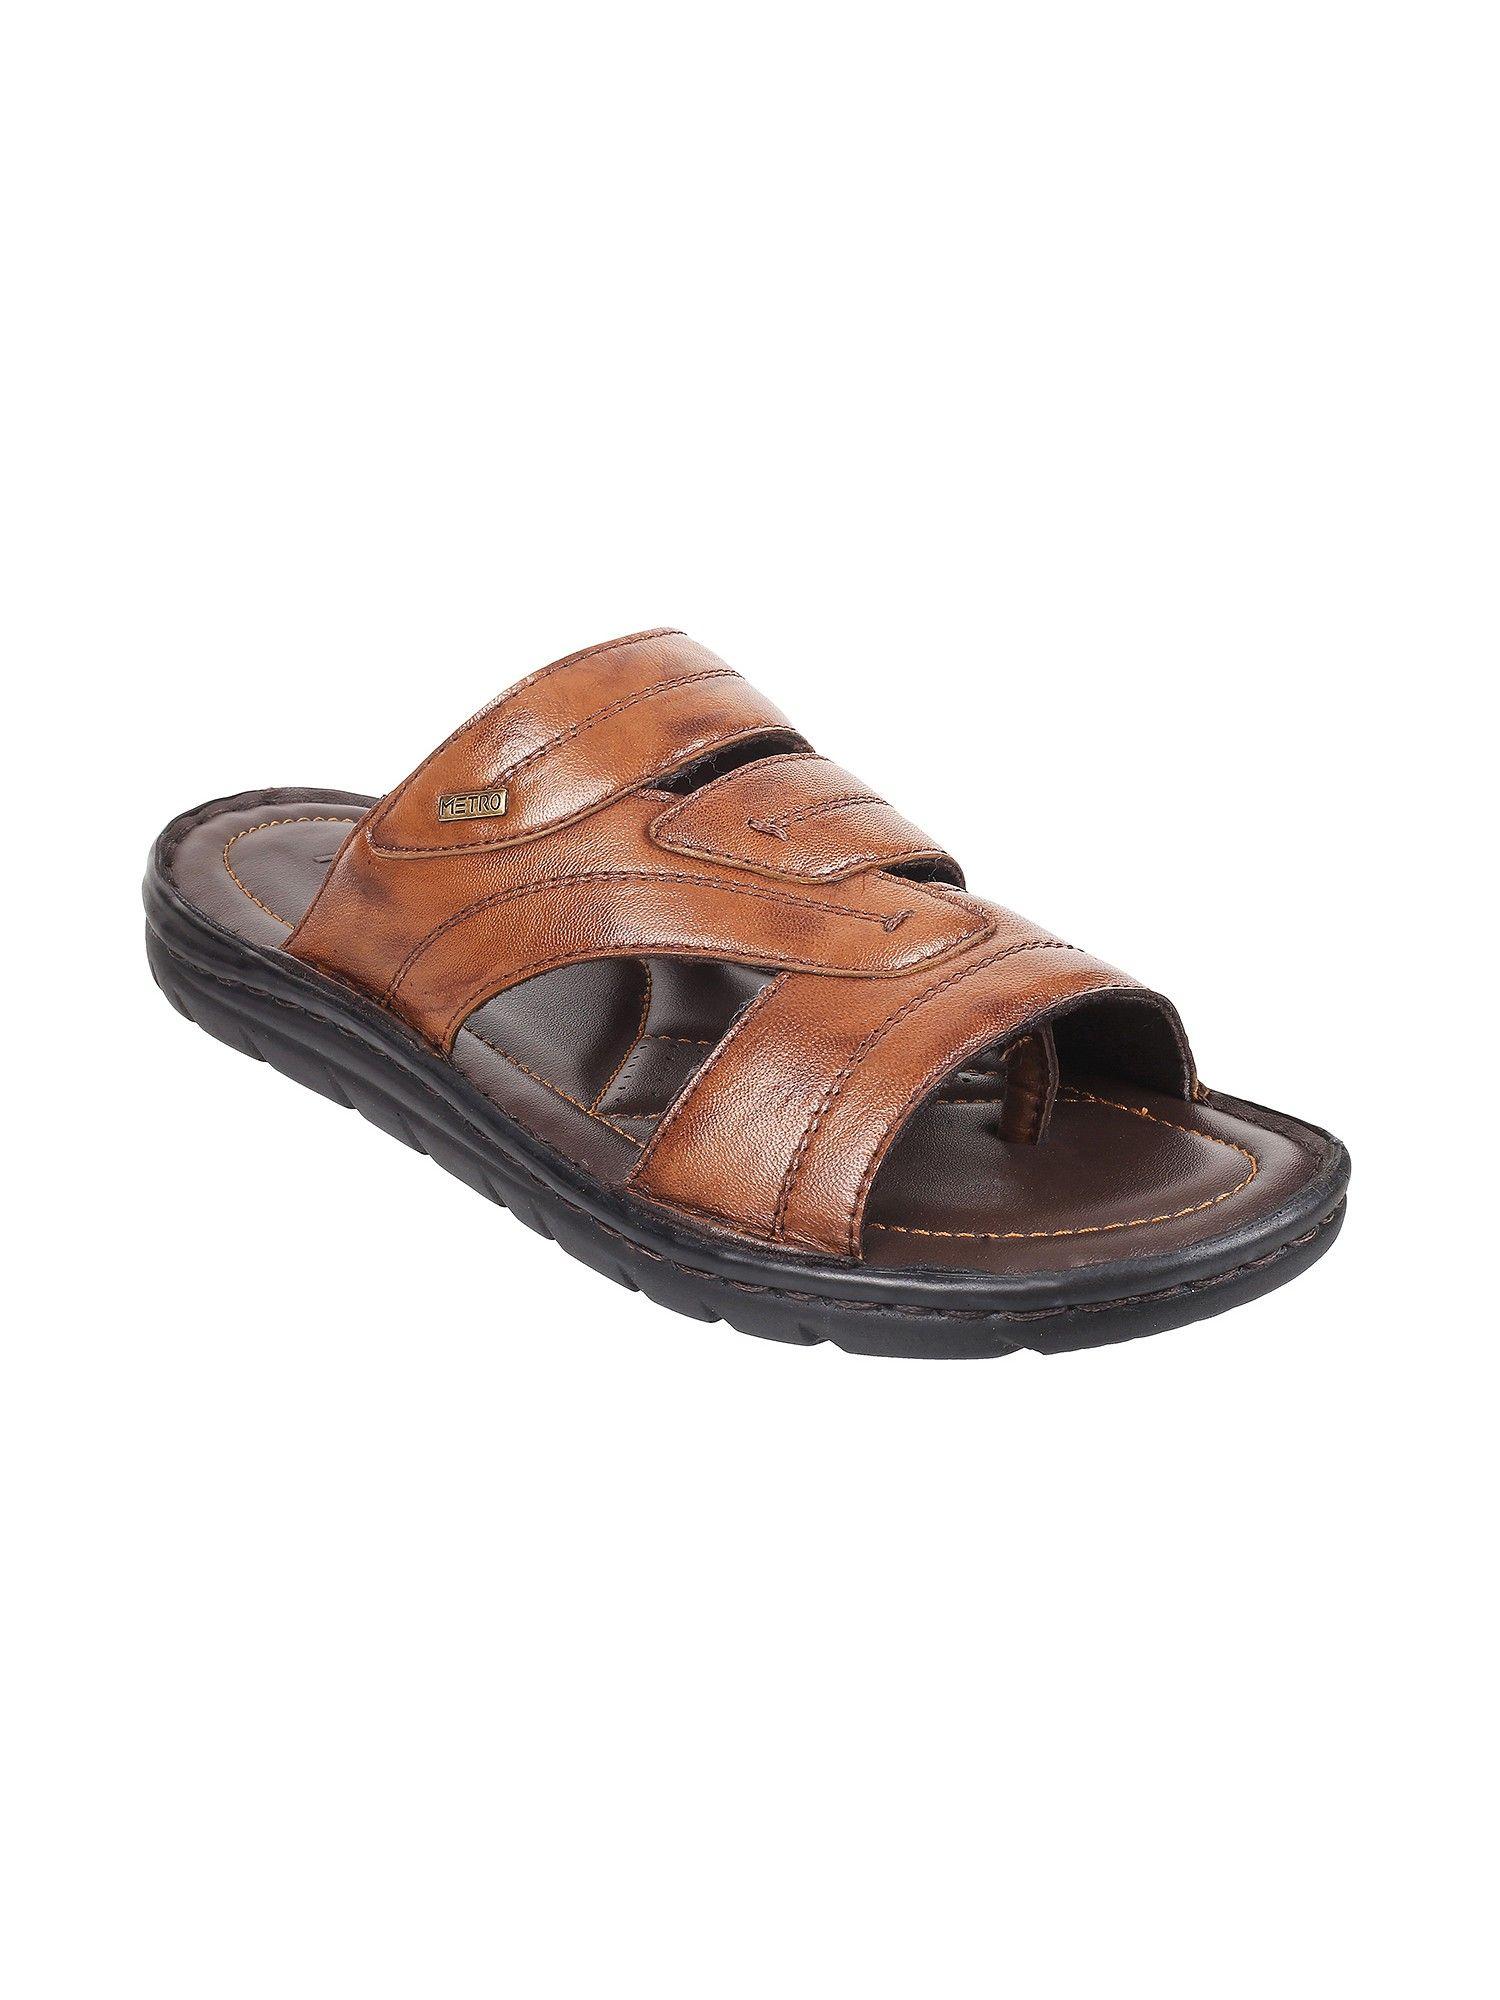 Mens Tan Flat ChappalsMetro Mens Tan Leather Solid-plain Sandals